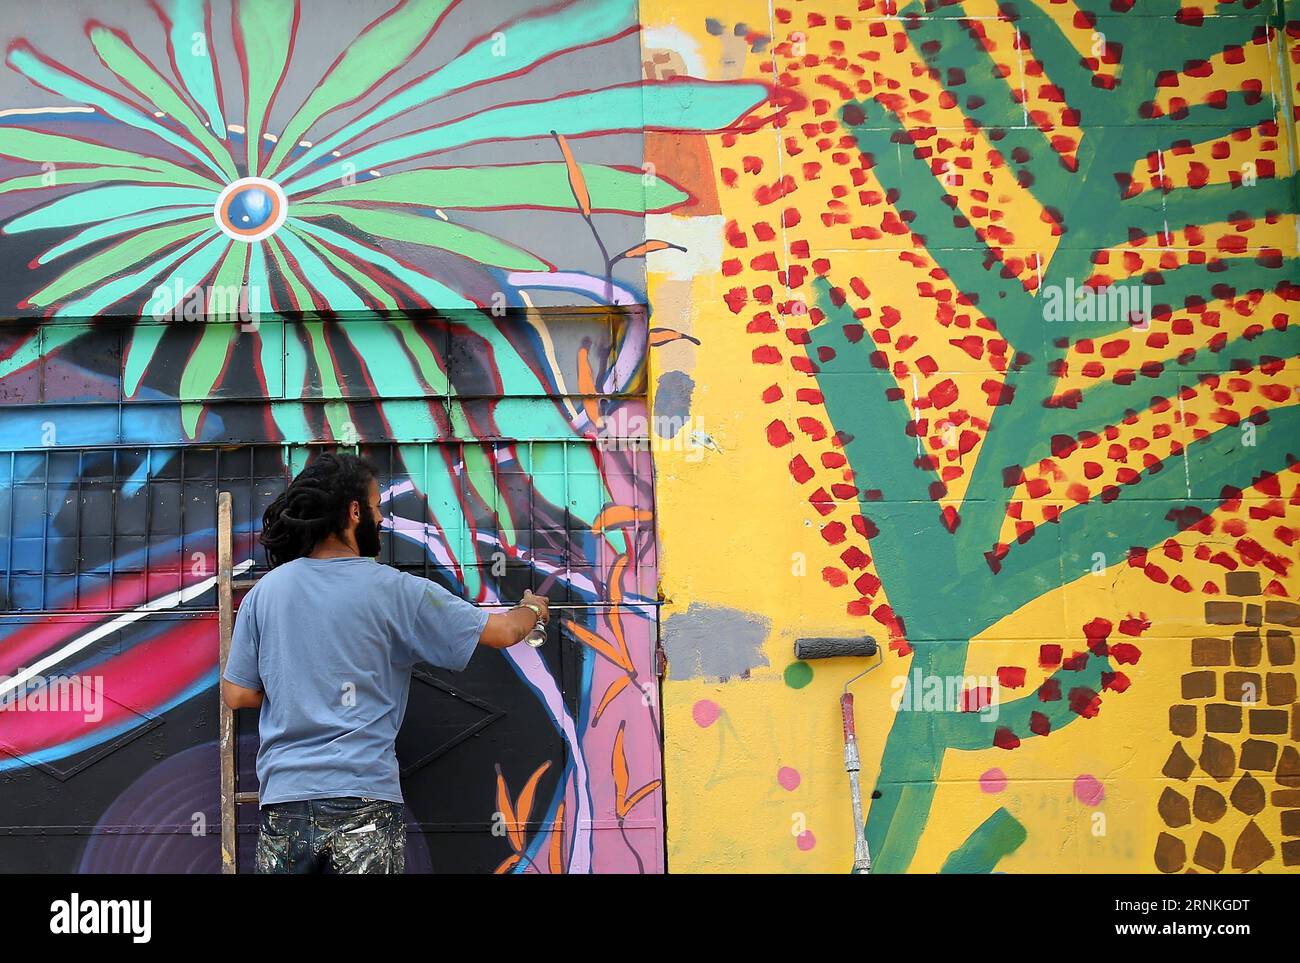 (170330) -- SAO PAULO, 30 mars 2017 -- Un graffiti brésilien peint le mur de la Batman s Alley à Sao Paulo, Brésil, le 29 mars 2017. Batman s Alley est une destination touristique populaire en raison de la forte concentration de graffitis qui bordent les rues.) (Sxk) BRÉSIL-SAO PAULO-GRAFFITI LixMing PUBLICATIONxNOTxINxCHN Sao Paulo Mars 30 2017 un artiste graffiti brésilien peint le mur À la Batman S Alley à Sao Paulo Brésil Mars 29 2017 Batman S Alley EST une destination touristique populaire en raison de la concentration dense de Graffiti Thatcher Line les rues sxk Brésil Sao Paul Banque D'Images